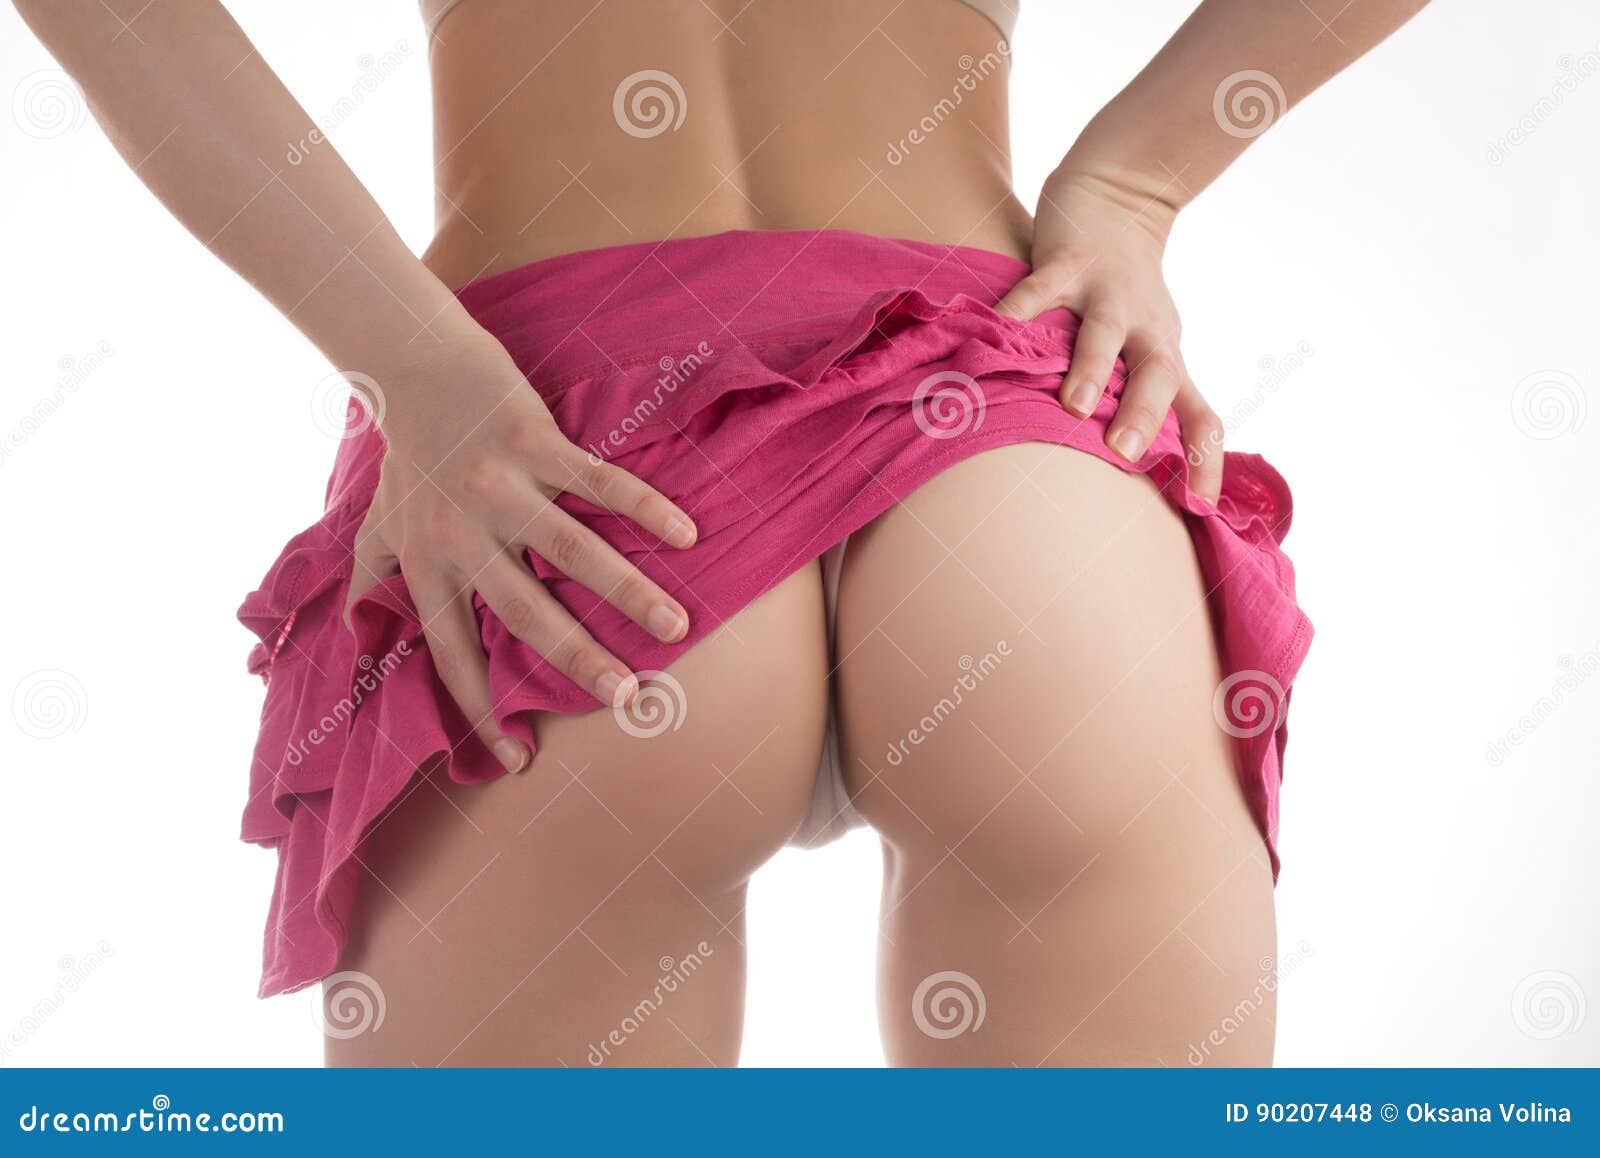 Short Skirt Ass Pics